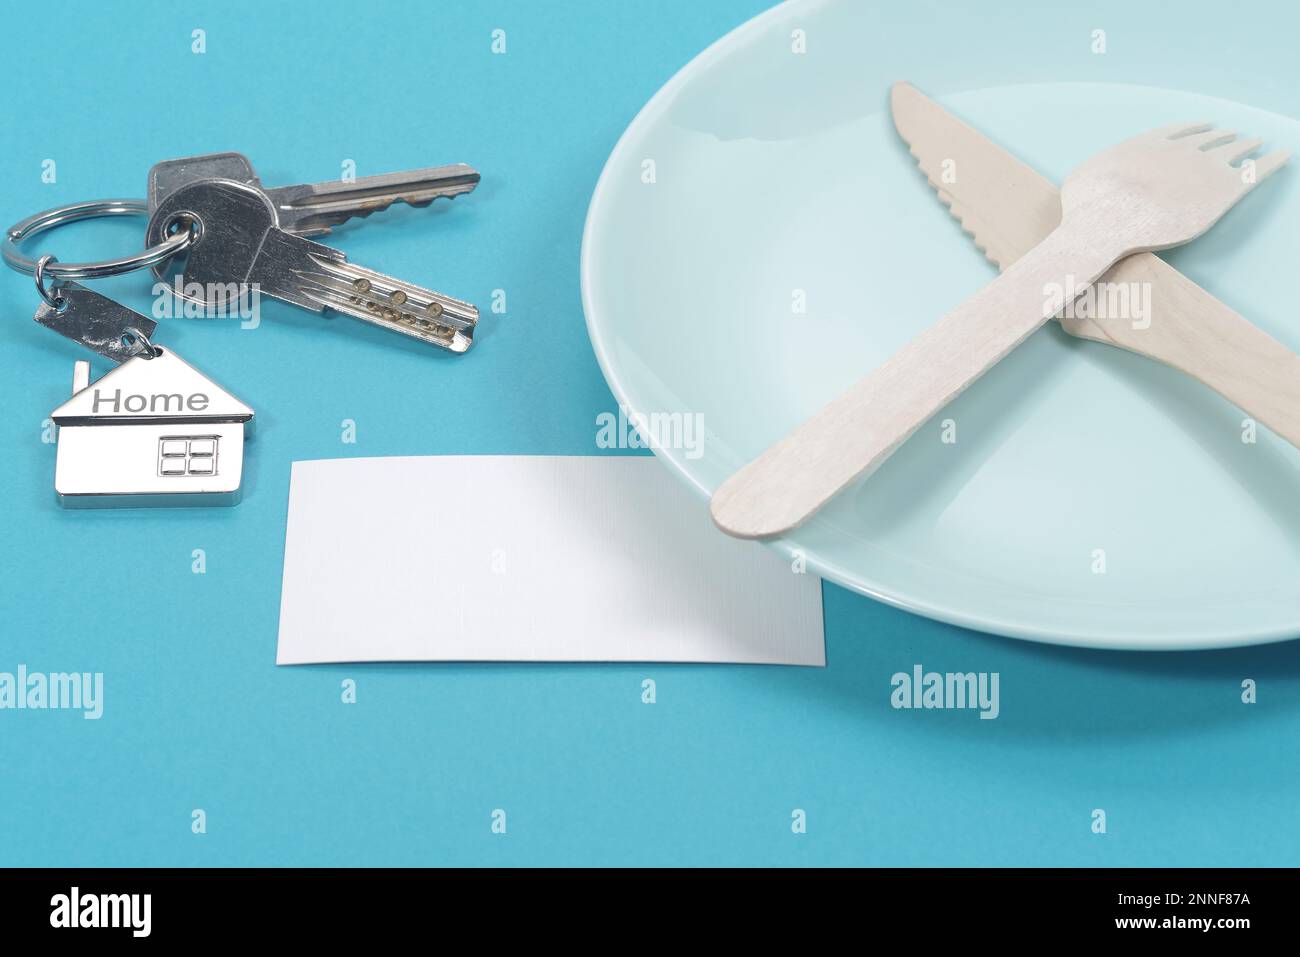 Haussymbol mit silbernen Schlüsseln und leerer weißer Visitenkarte auf blauem Hintergrund. Immobilienkonzept Stockfoto